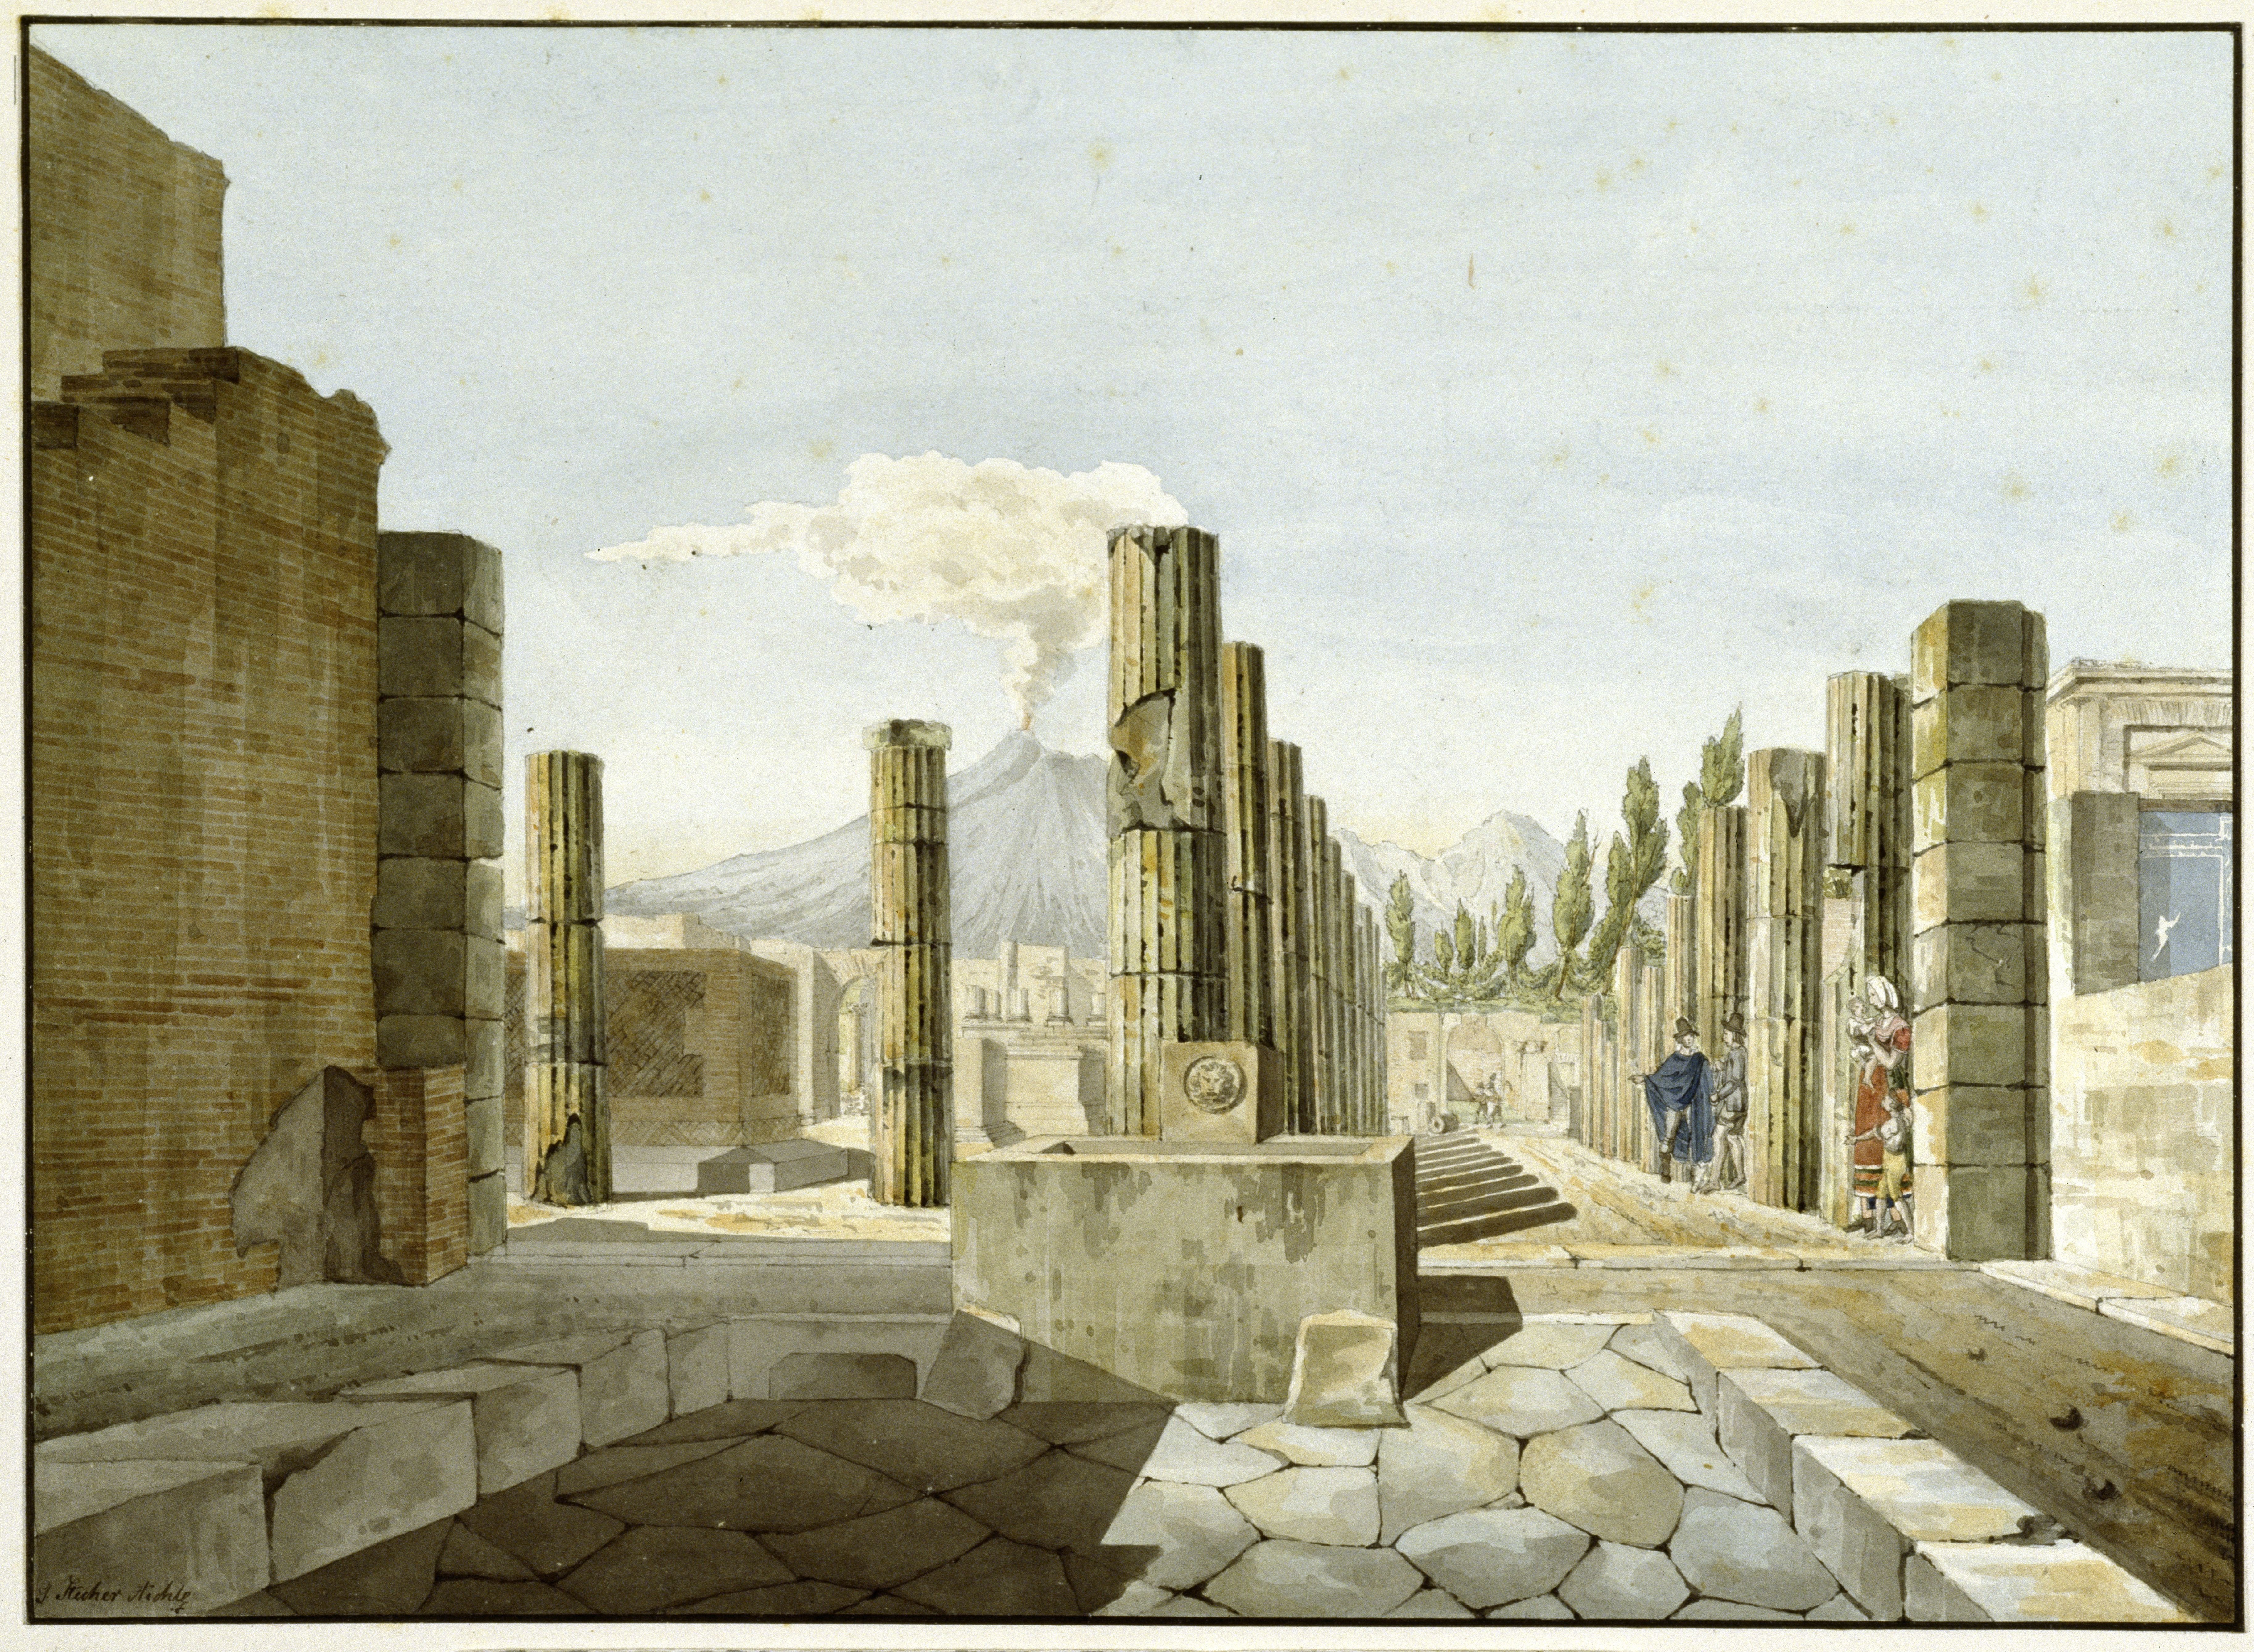 Stecher Aichle, G.: Das Forum in Pompeji, 1823, SPSG, GK II (5) 3242. (Stiftung Preußische Schlösser und Gärten Berlin-Brandenburg CC BY-NC-SA)